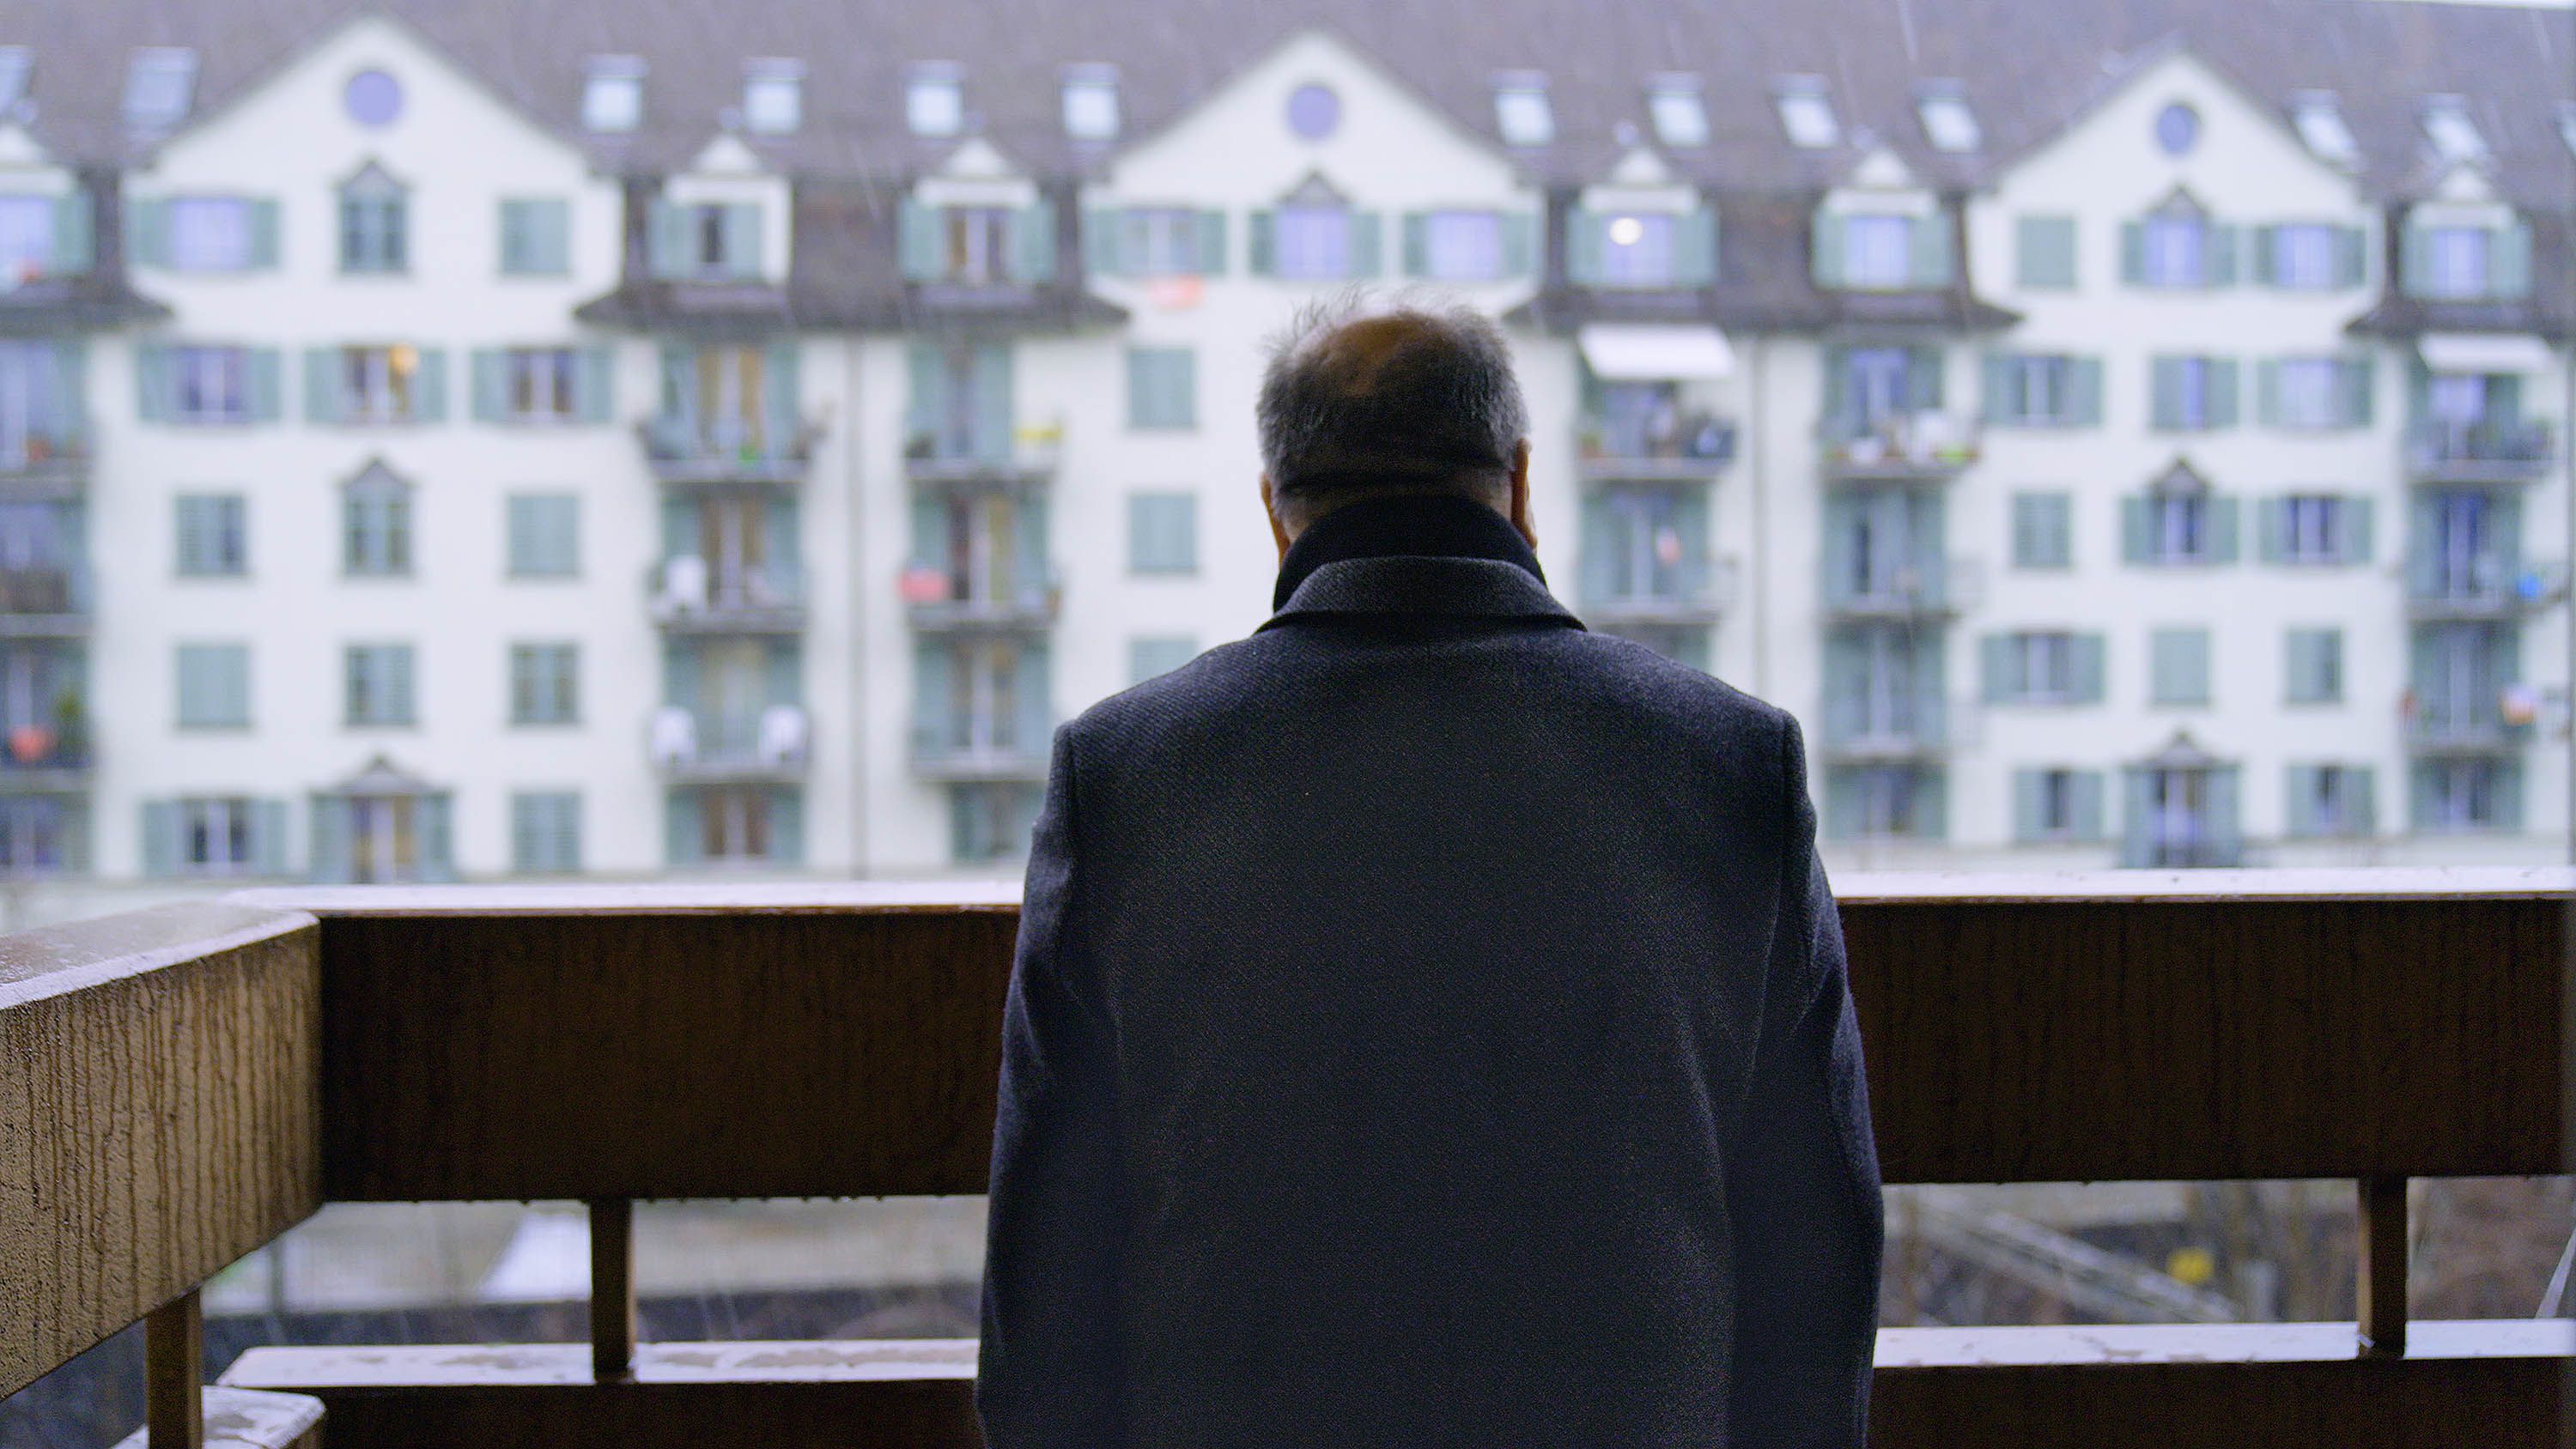 Un uomo affacciato al balcone guarda una fila di case.